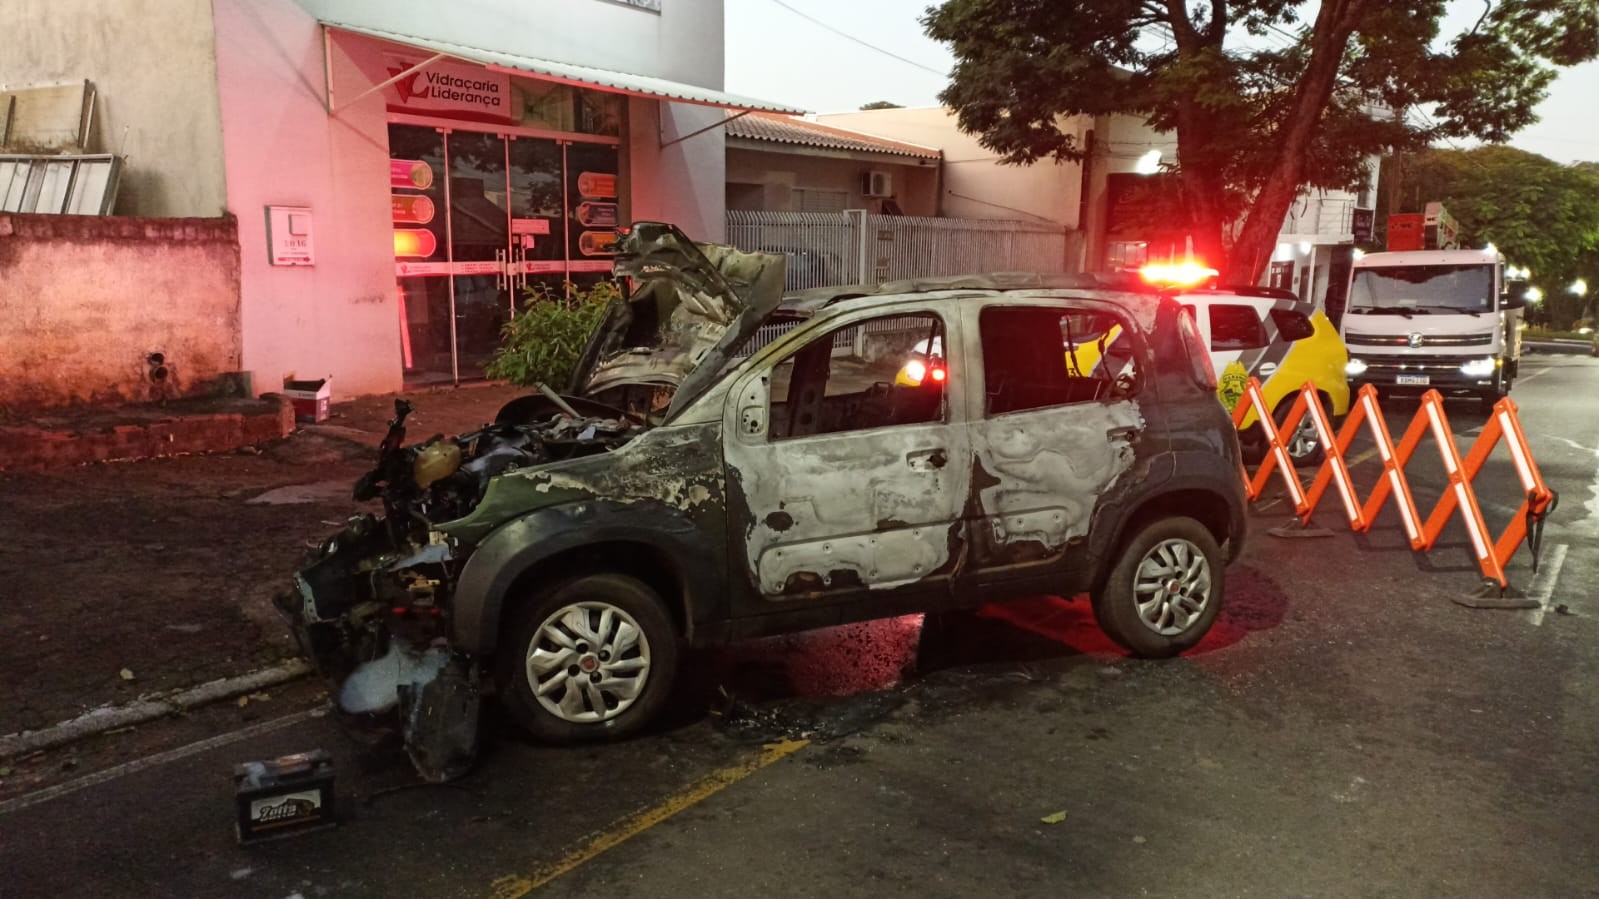 Motorista perde controle do veículo, bate em poste e carro pega fogo em rua de Umuarama